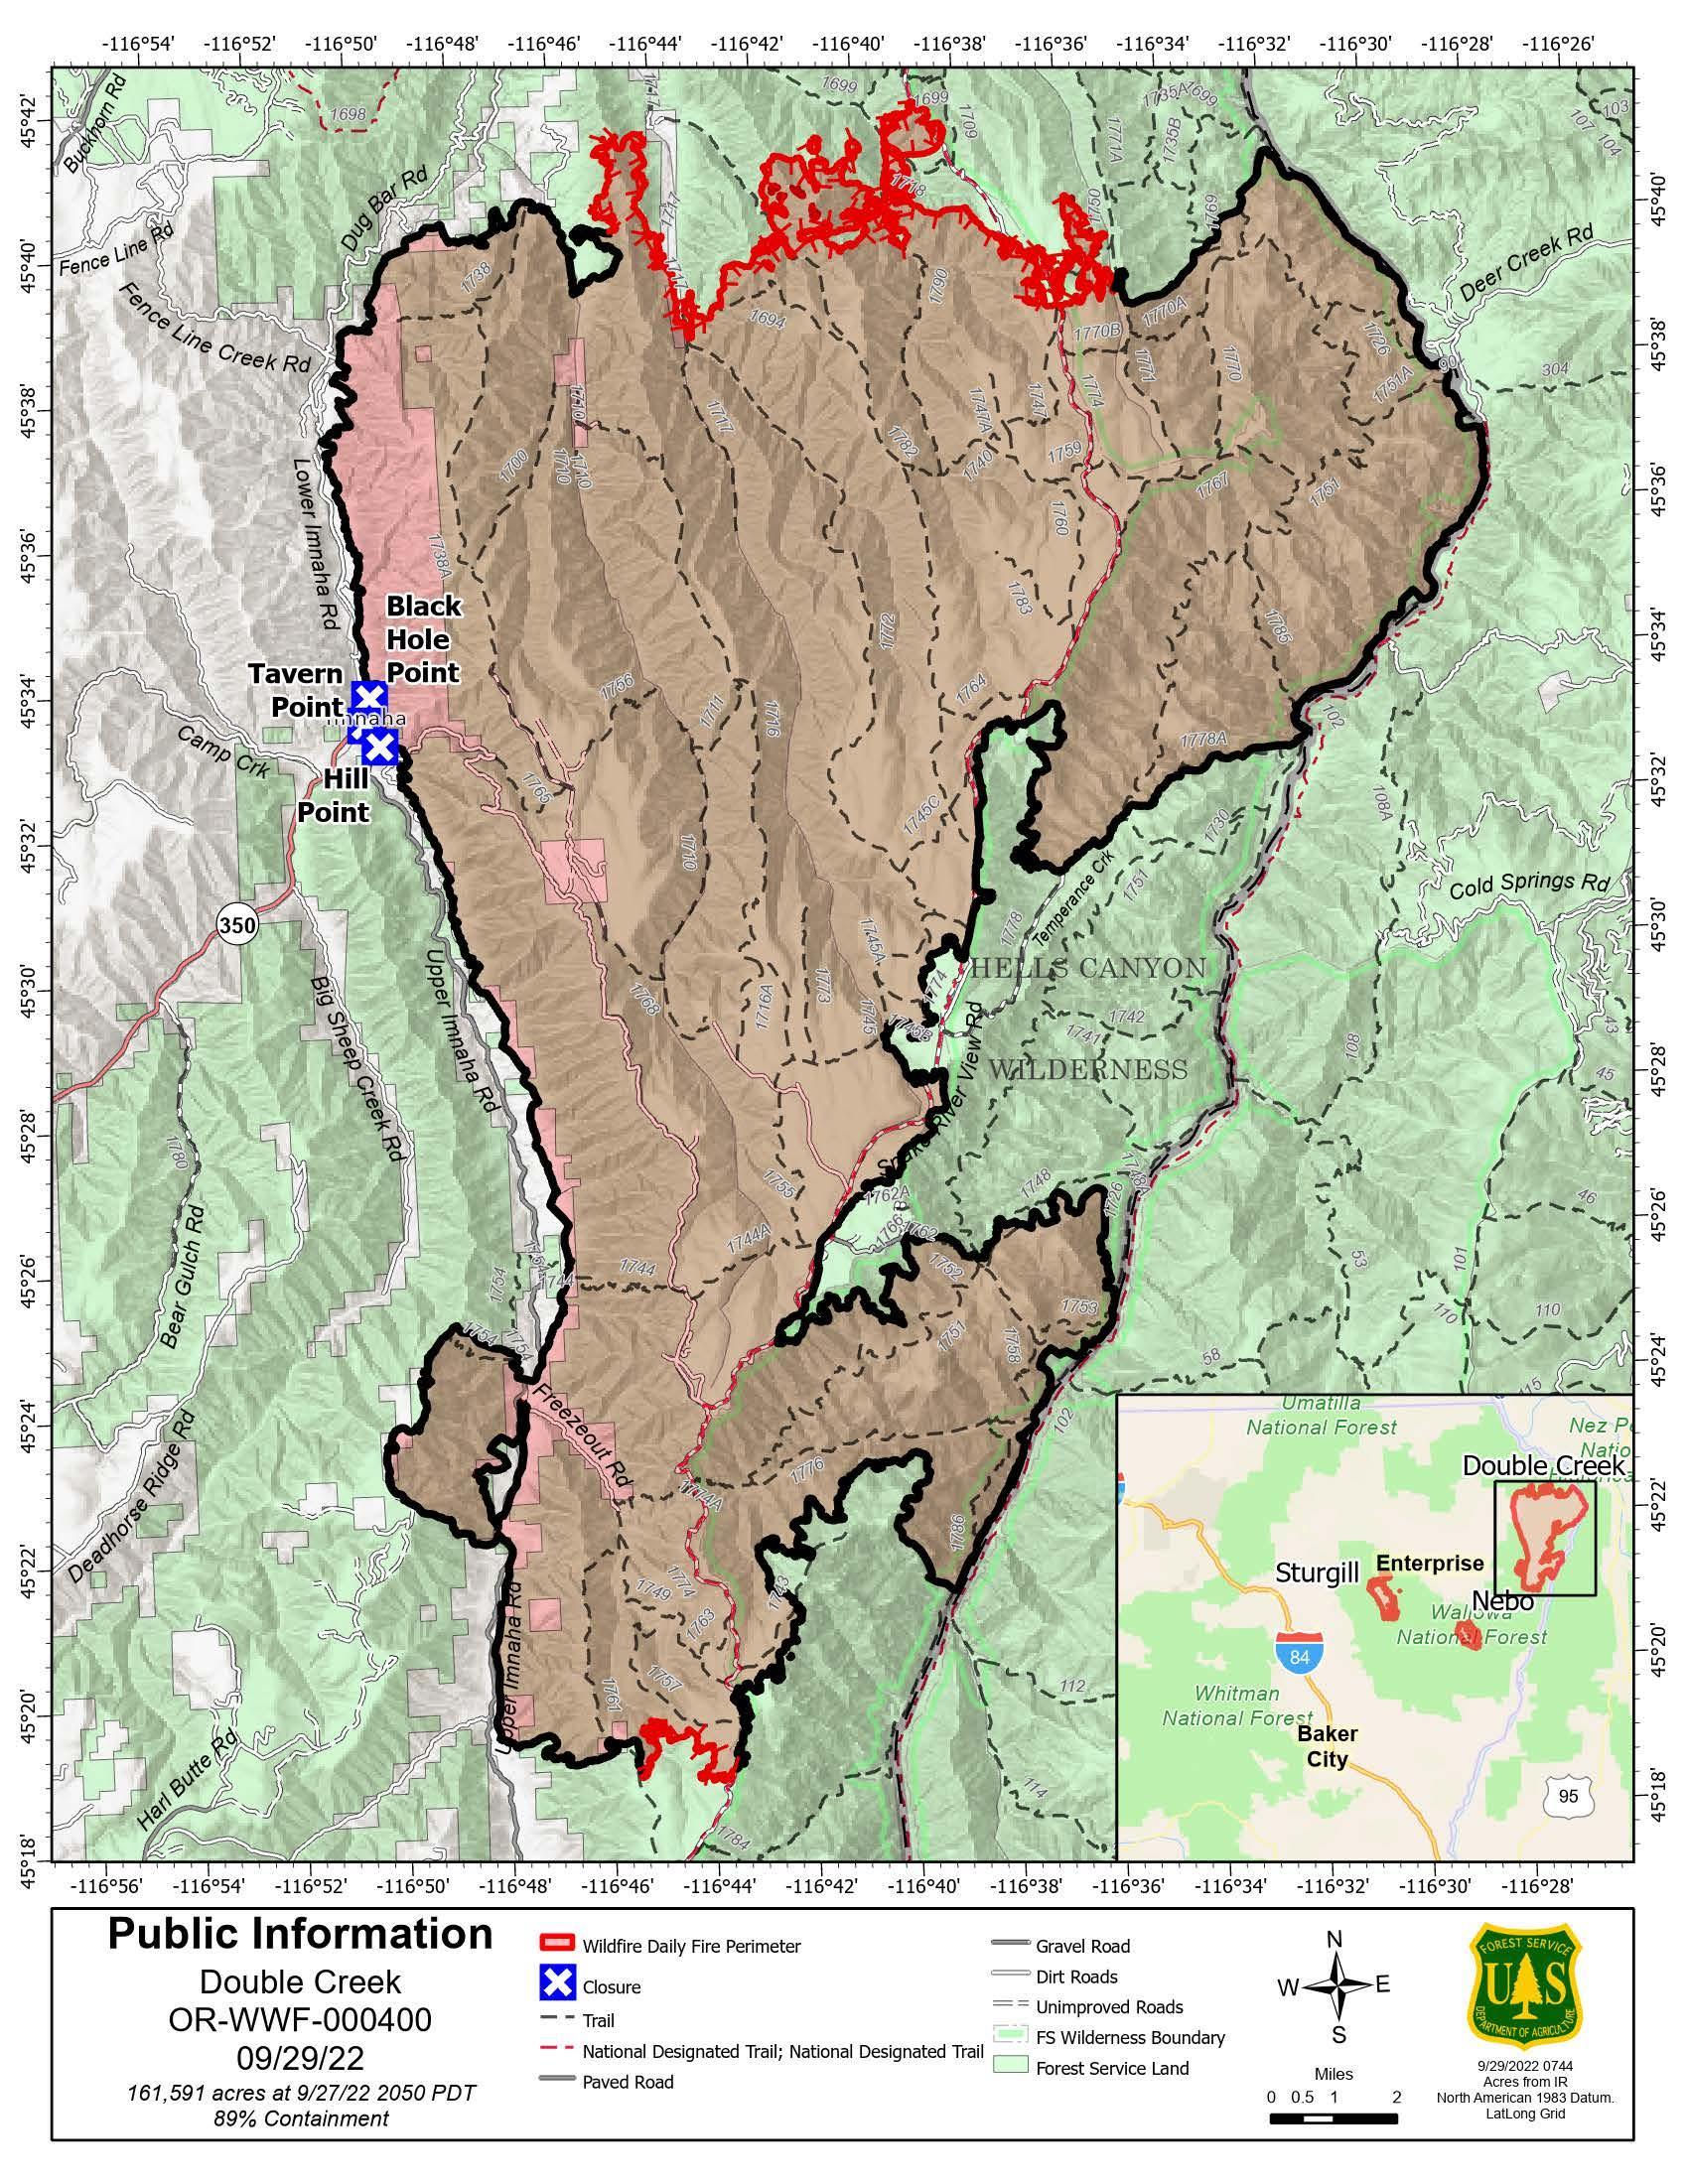 Double Creek Fire Map - 09/29/2022